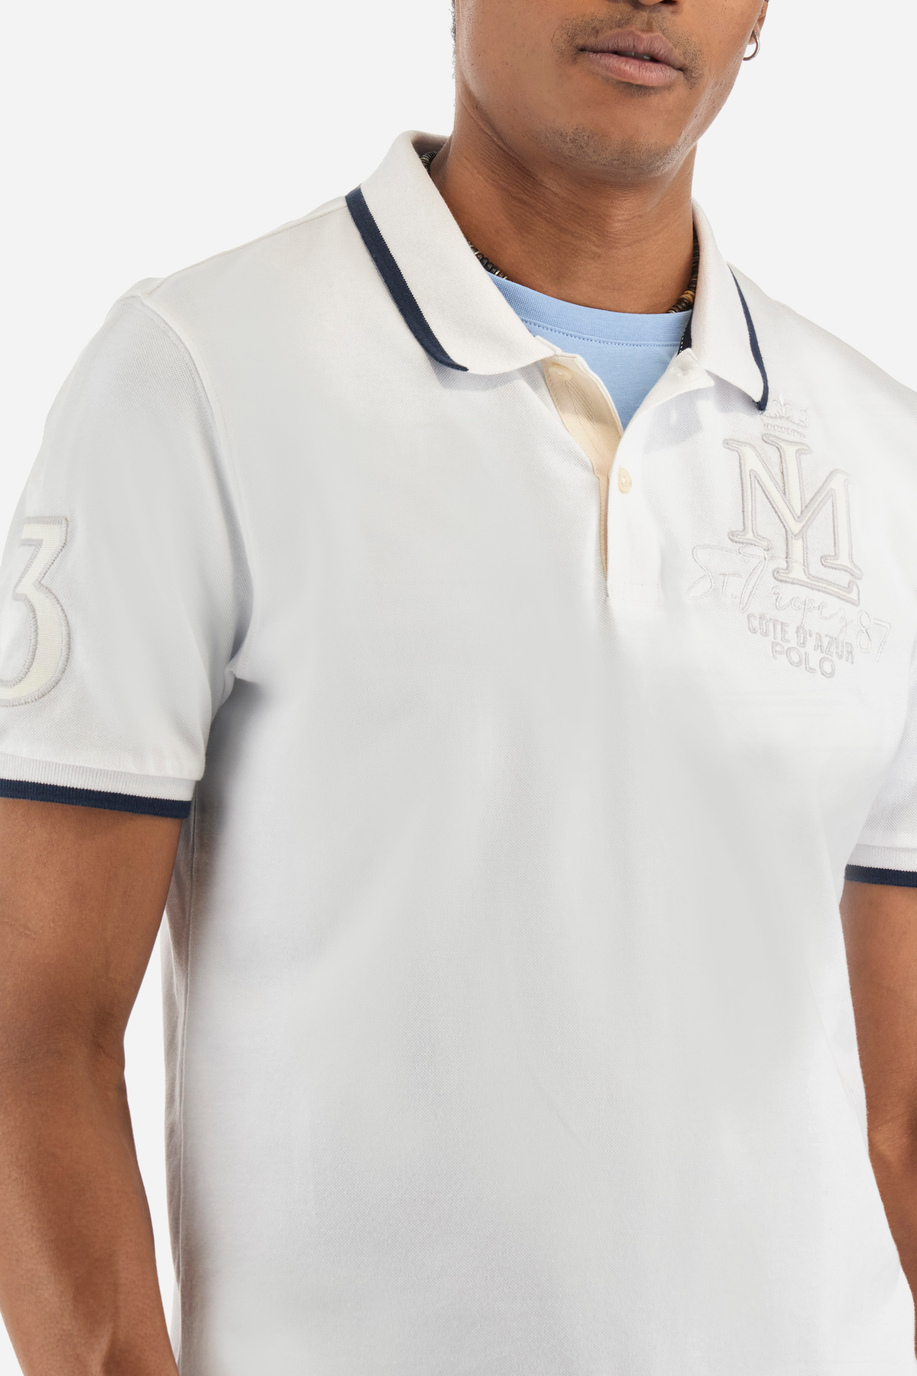 Polo regular fit in cotone elasticizzato - Yoseff - Polo Shirts | La Martina - Official Online Shop